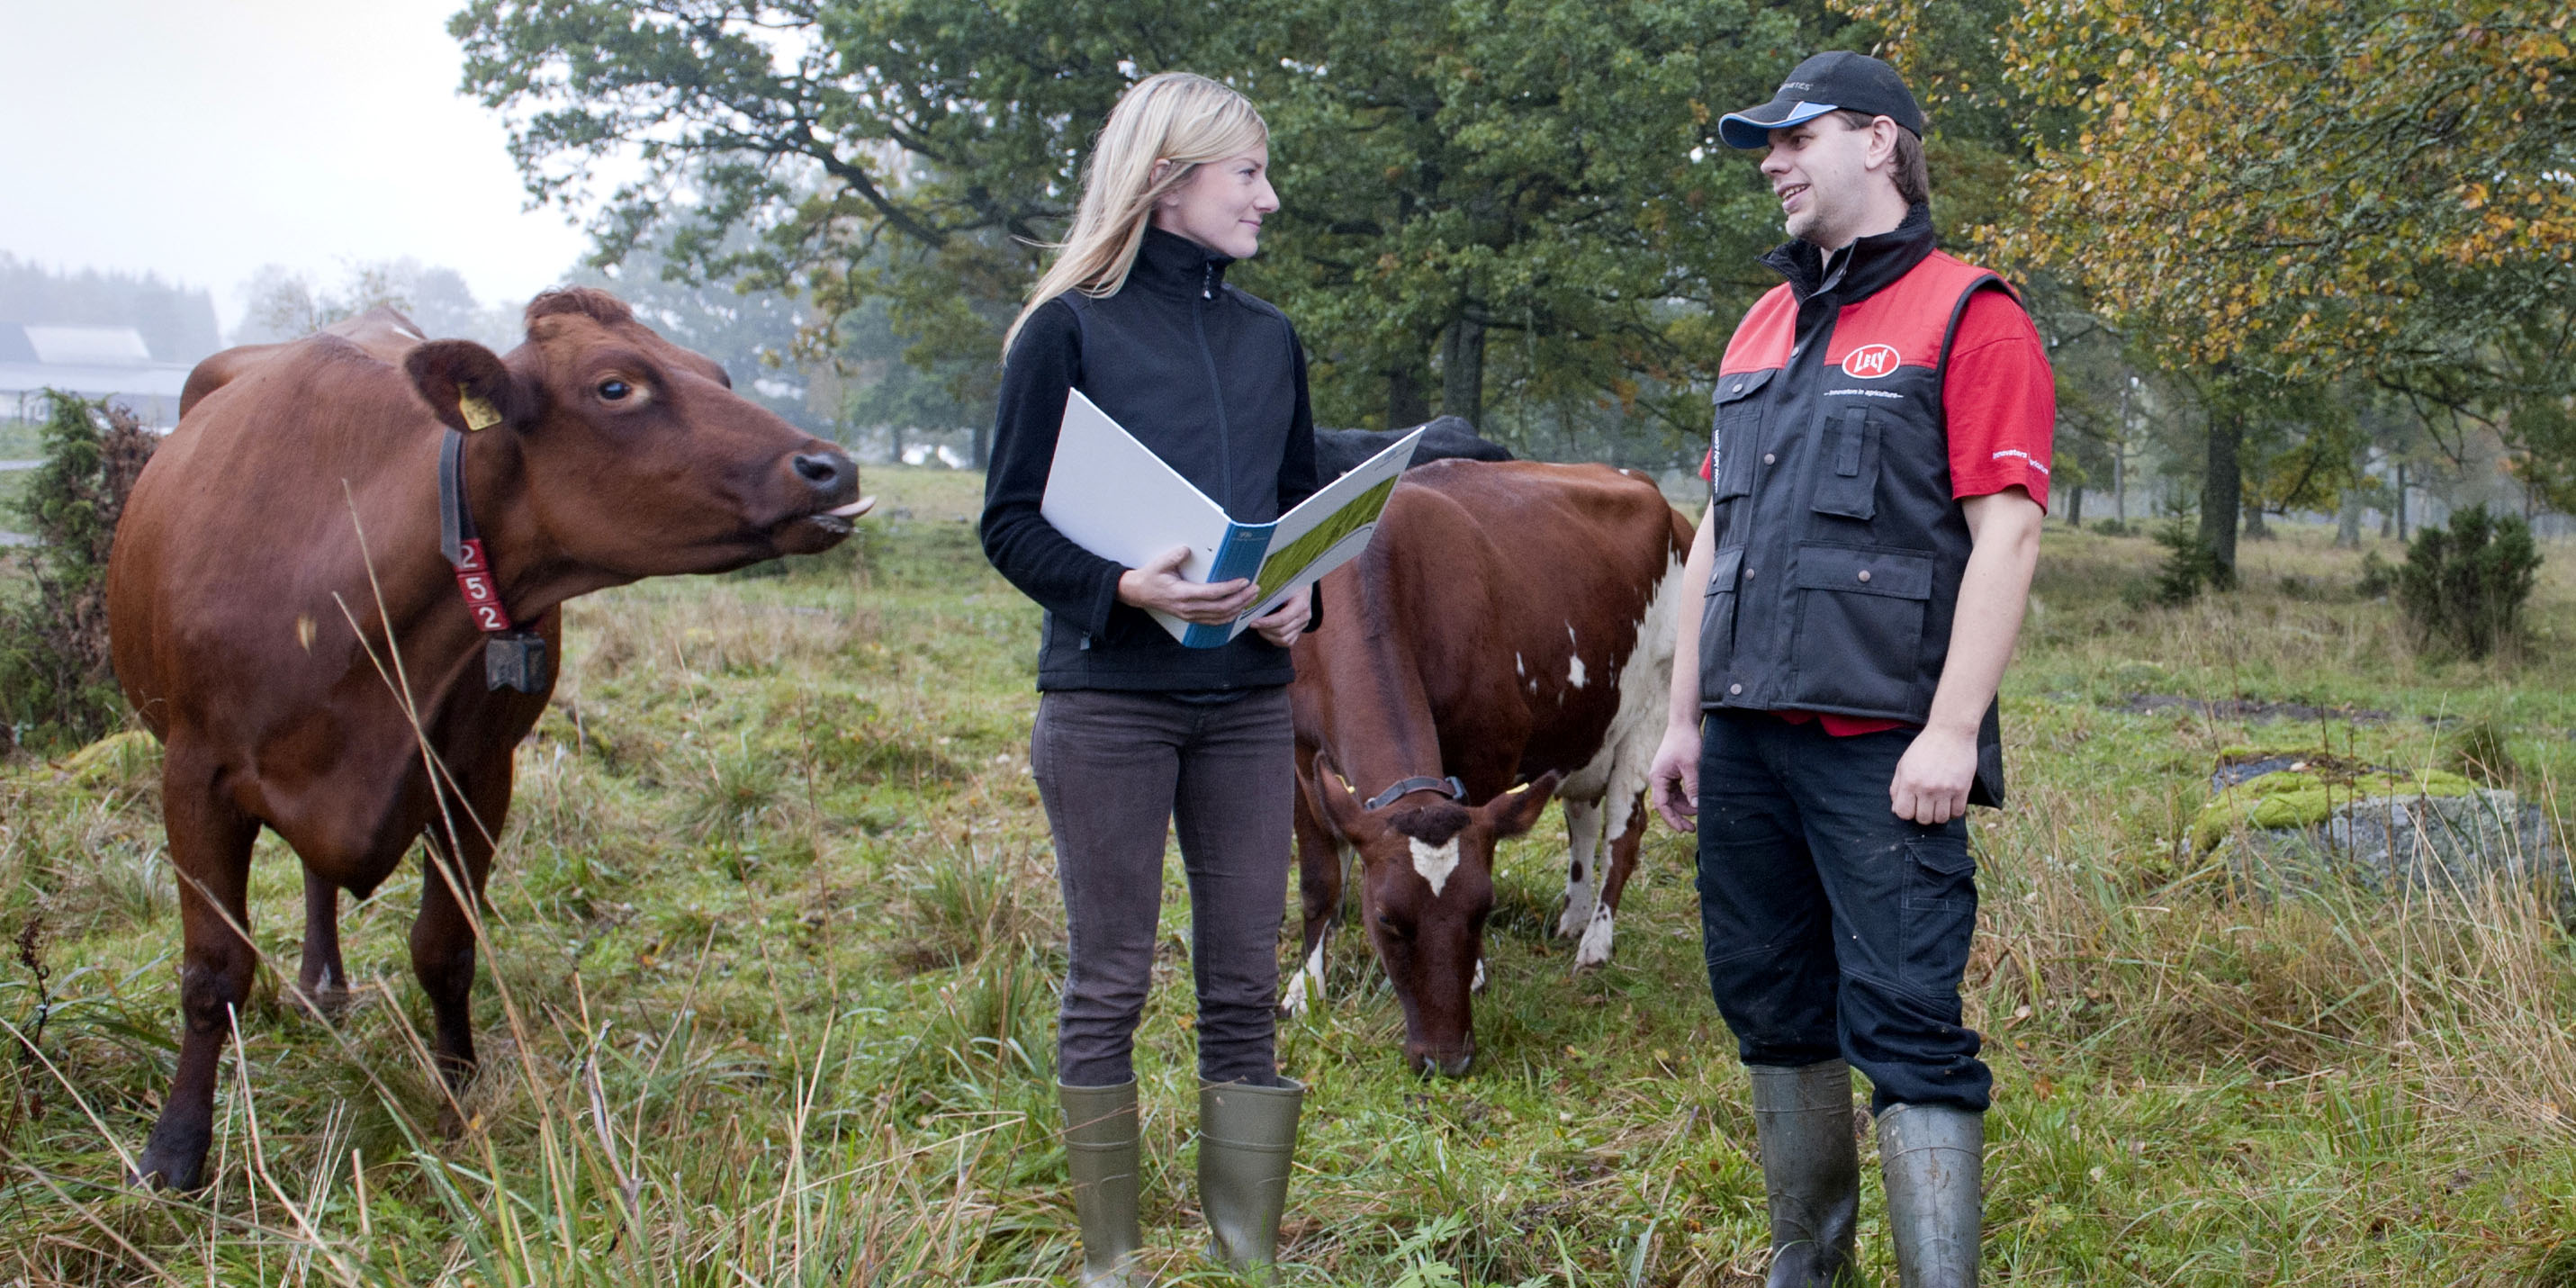 En kvinnlig rådgivare från Greppa Näringen håller i en pärm och samtalar med en manlig lantbrukare som är medlem. De står bland kor på bete.